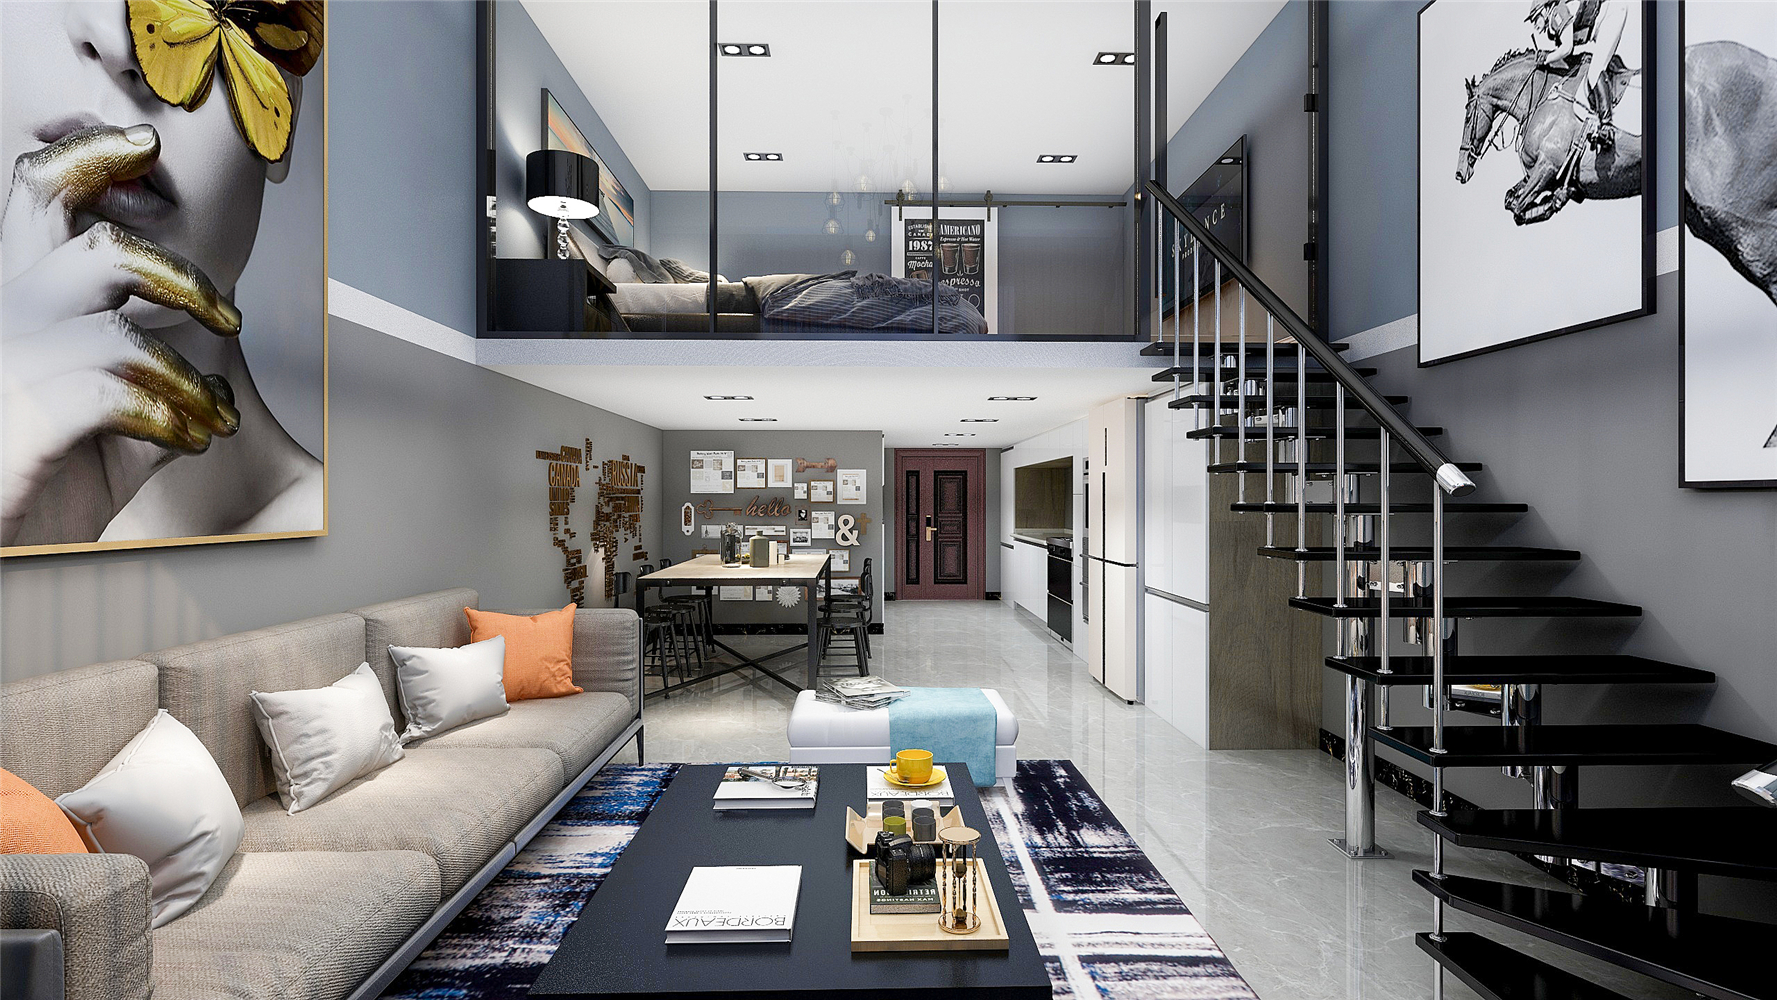 混搭风格,loft风格,10-15万装修,一居室装修,沙发,楼梯,黑白,灰色